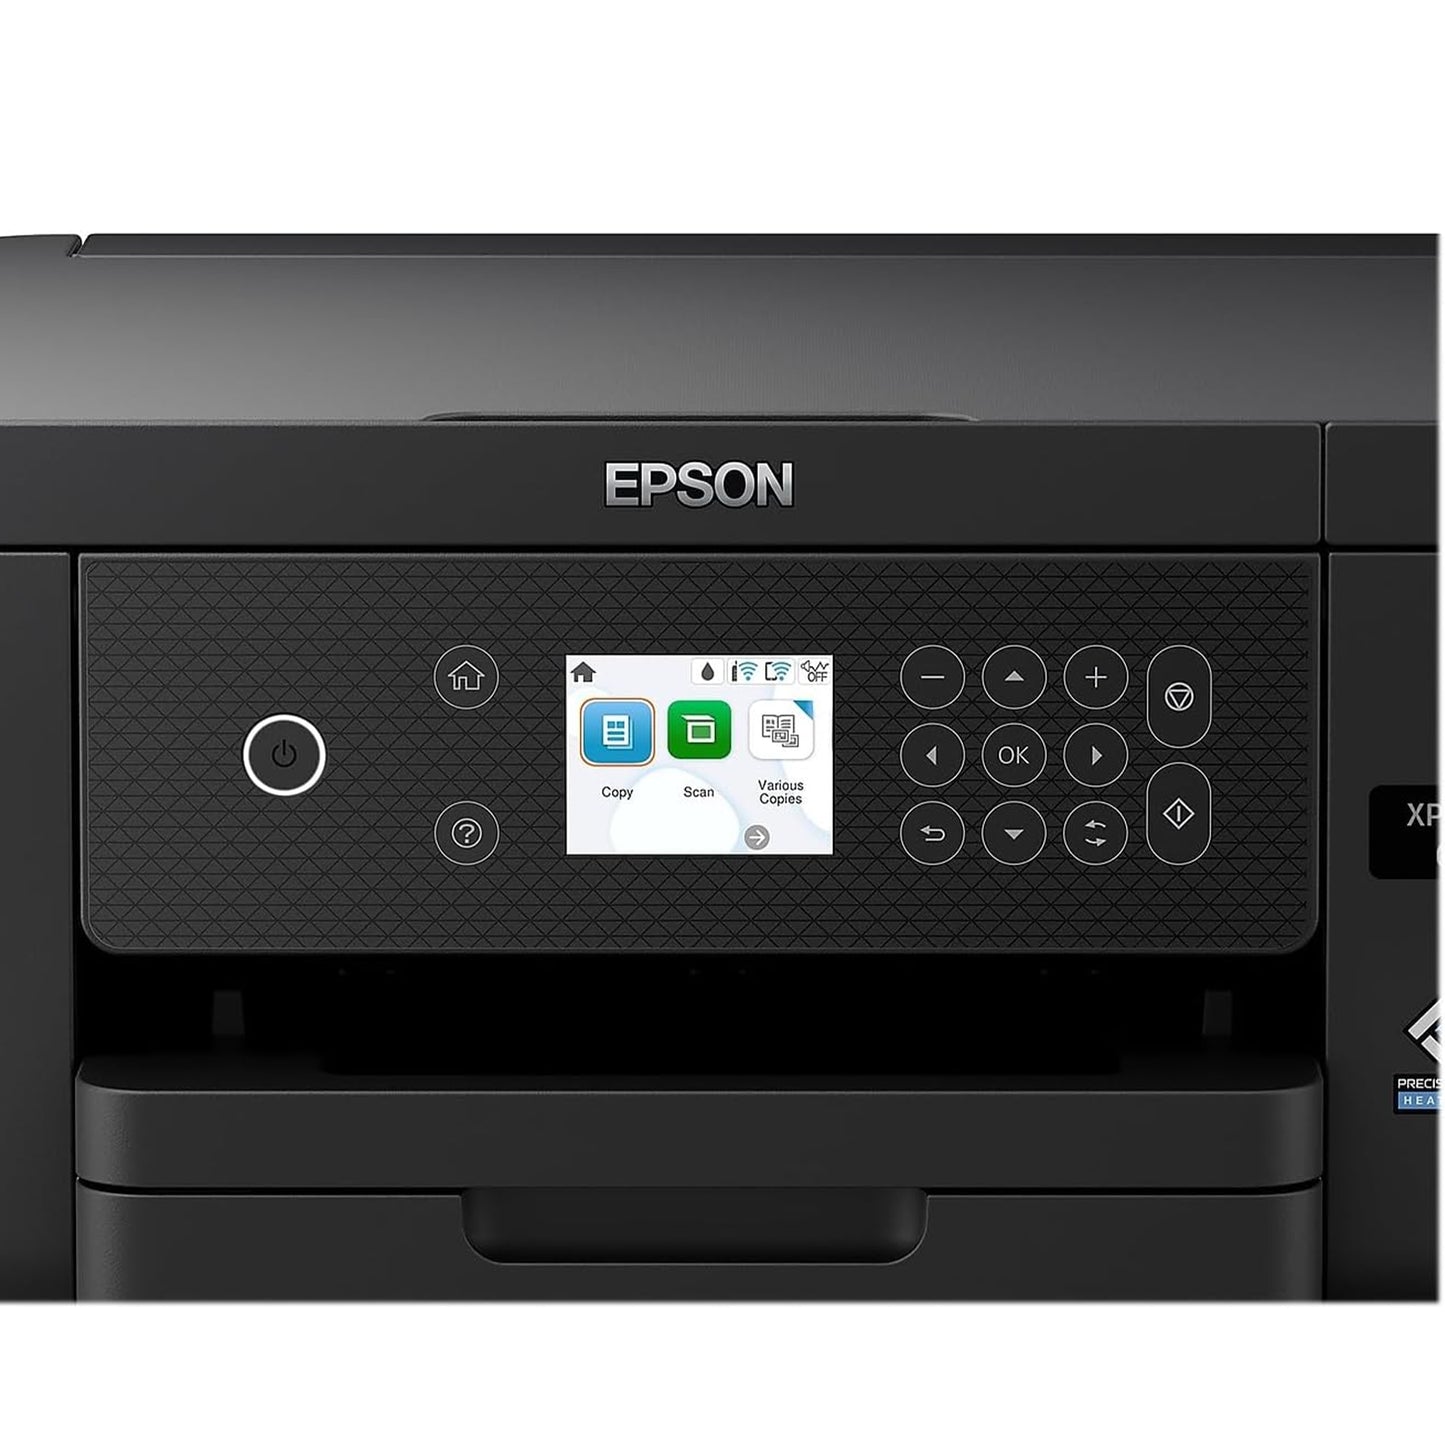 طابعة Epson Expression Home XP-5200 اللاسلكية متعددة الإمكانات الملونة مع المسح الضوئي والنسخ والطباعة التلقائية على الوجهين وصور بلا حدود وصينية ورق سعة 150 ورقة وشاشة ملونة مقاس 2.4 بوصة، باللون الأسود